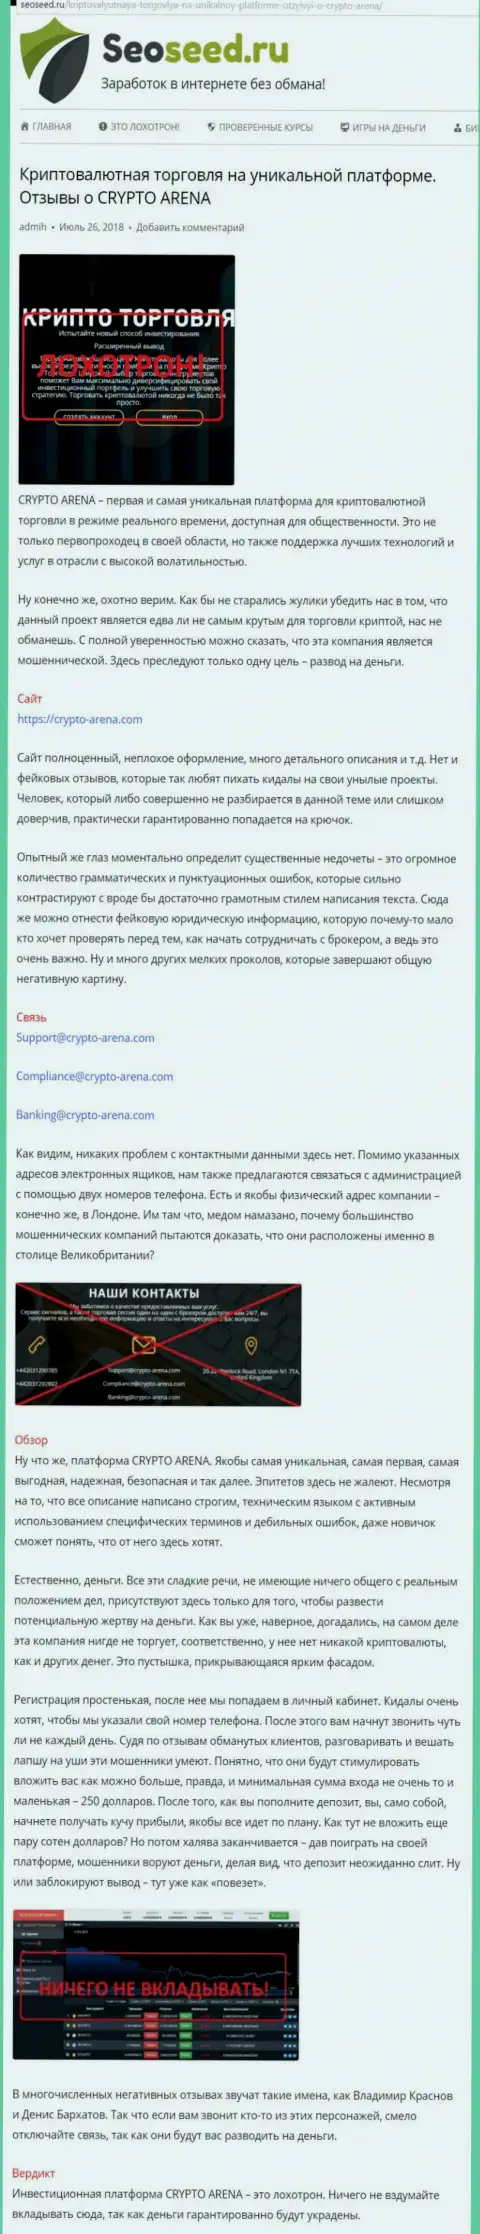 Автор отзыва предупреждает forex игроков о том, что брокер Сrypto Arena - это ЖУЛЬНИЧЕСТВО !!!